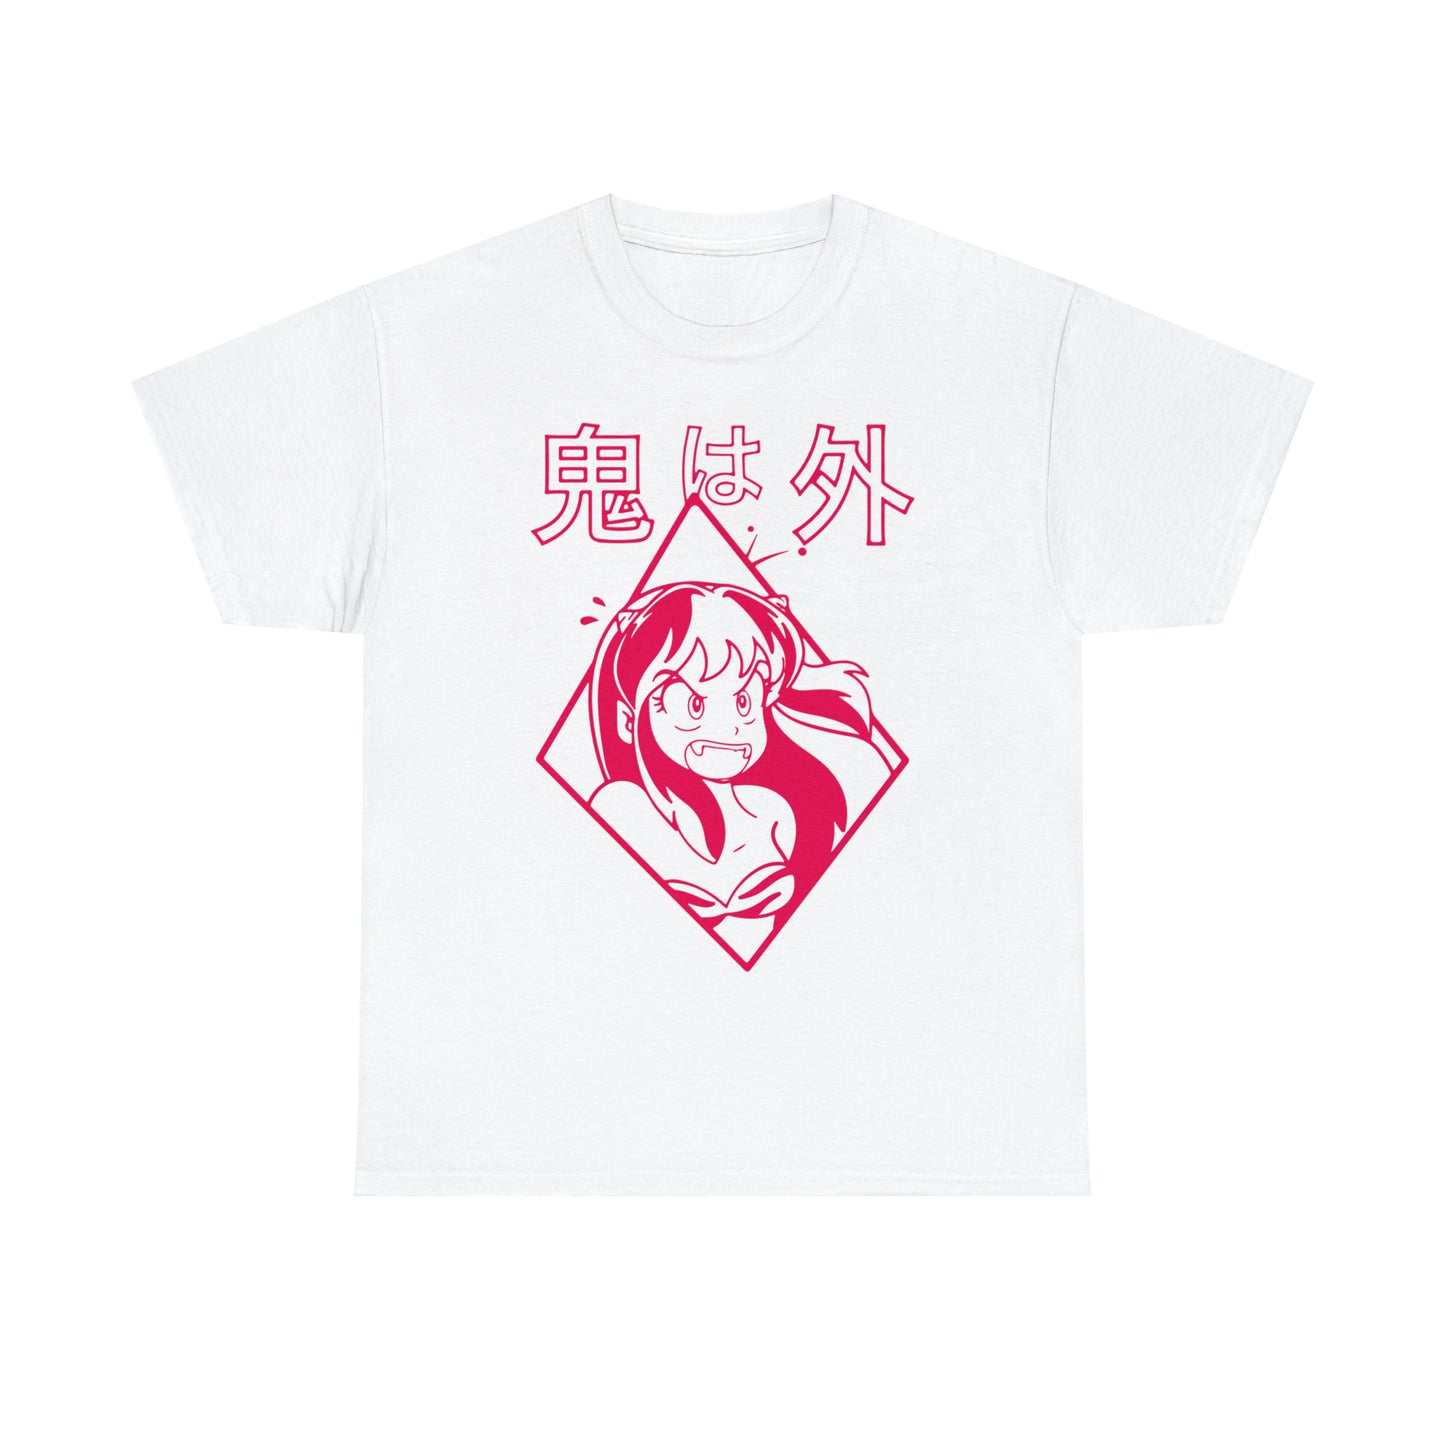 Urusei Yatsura T-Shirt